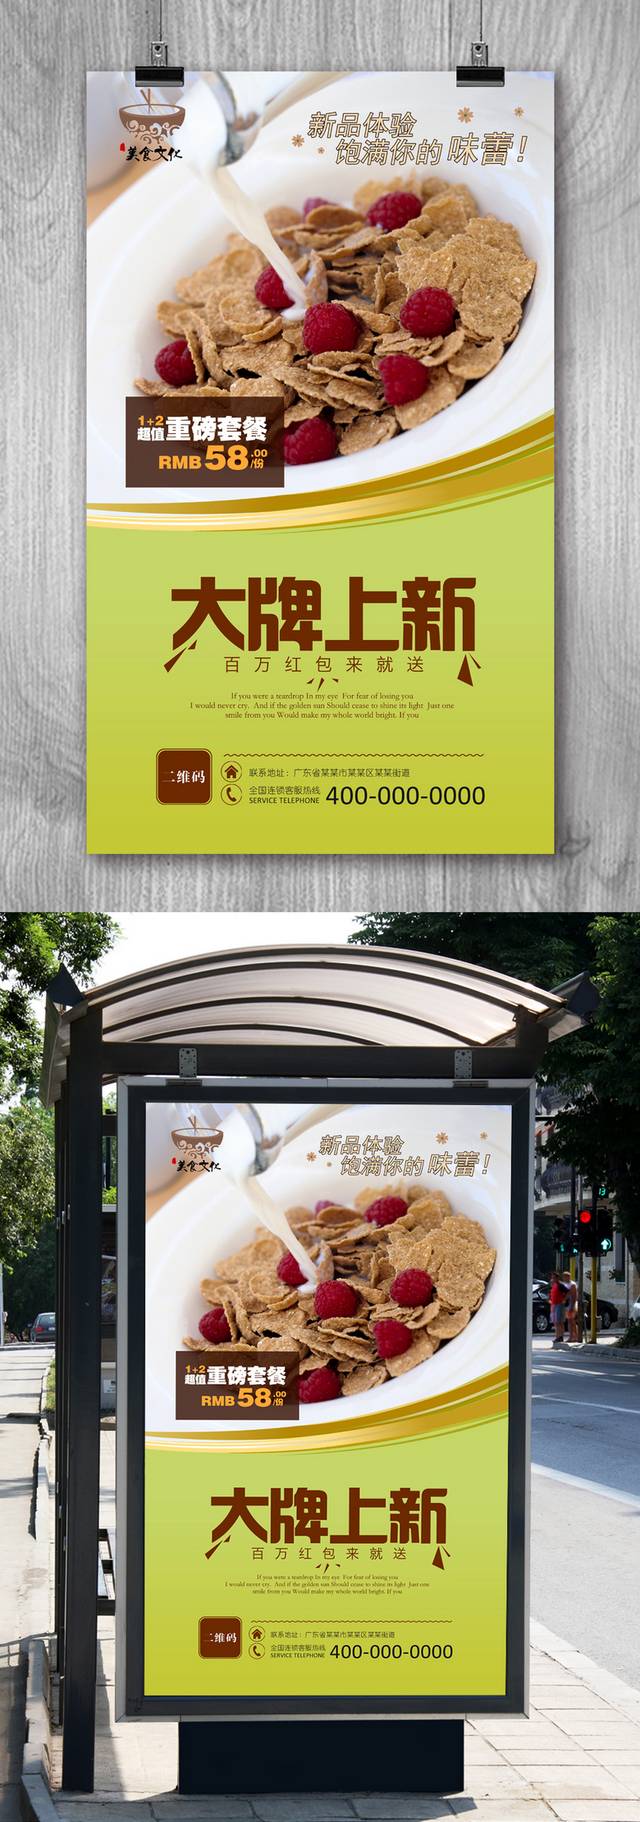 高清麦片宣传海报设计下载